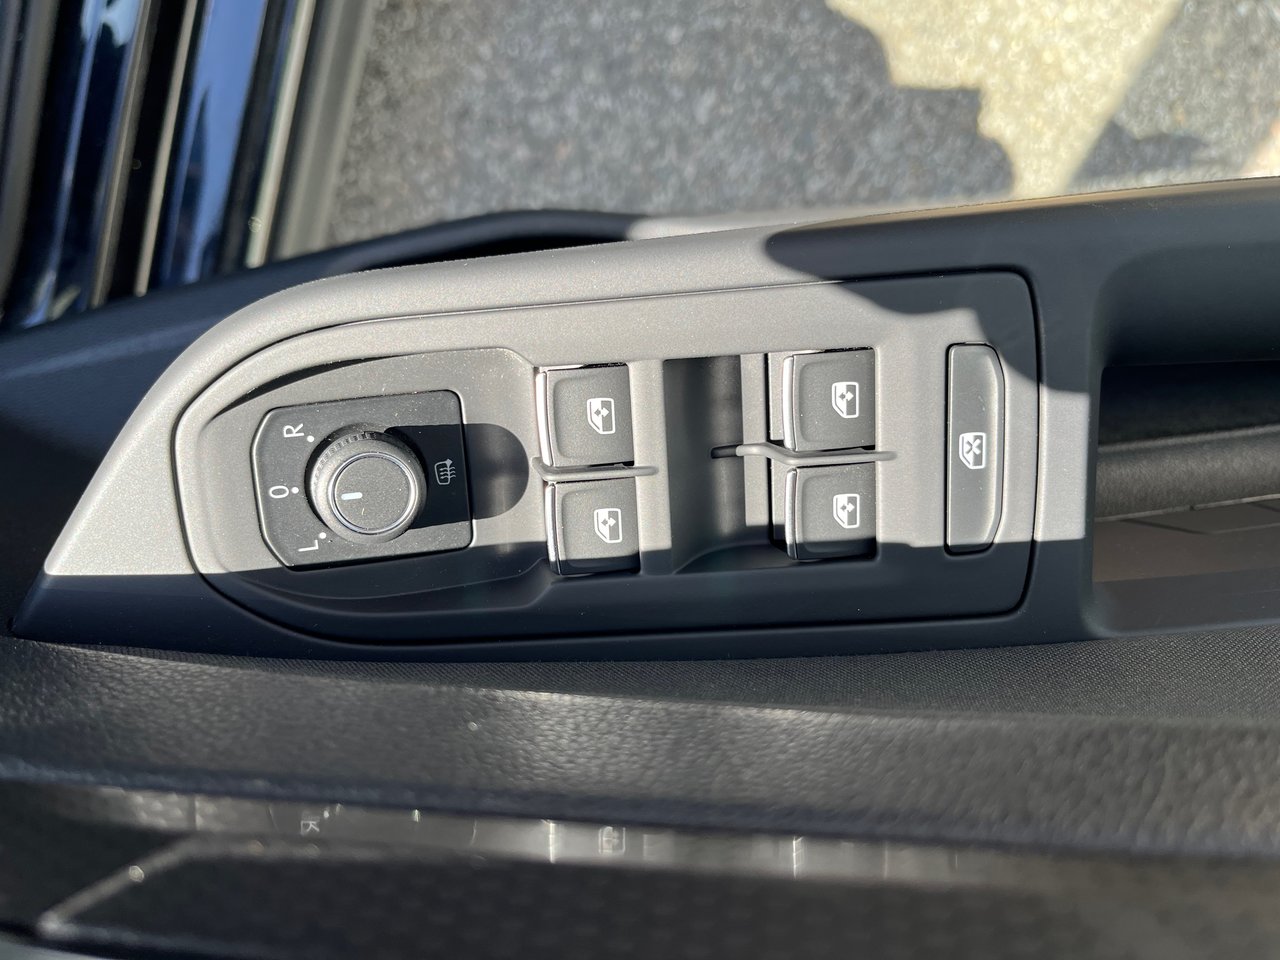 Volkswagen Golf GTI Autobahn+manuelle+bas milage+caméra de recul+ 2022